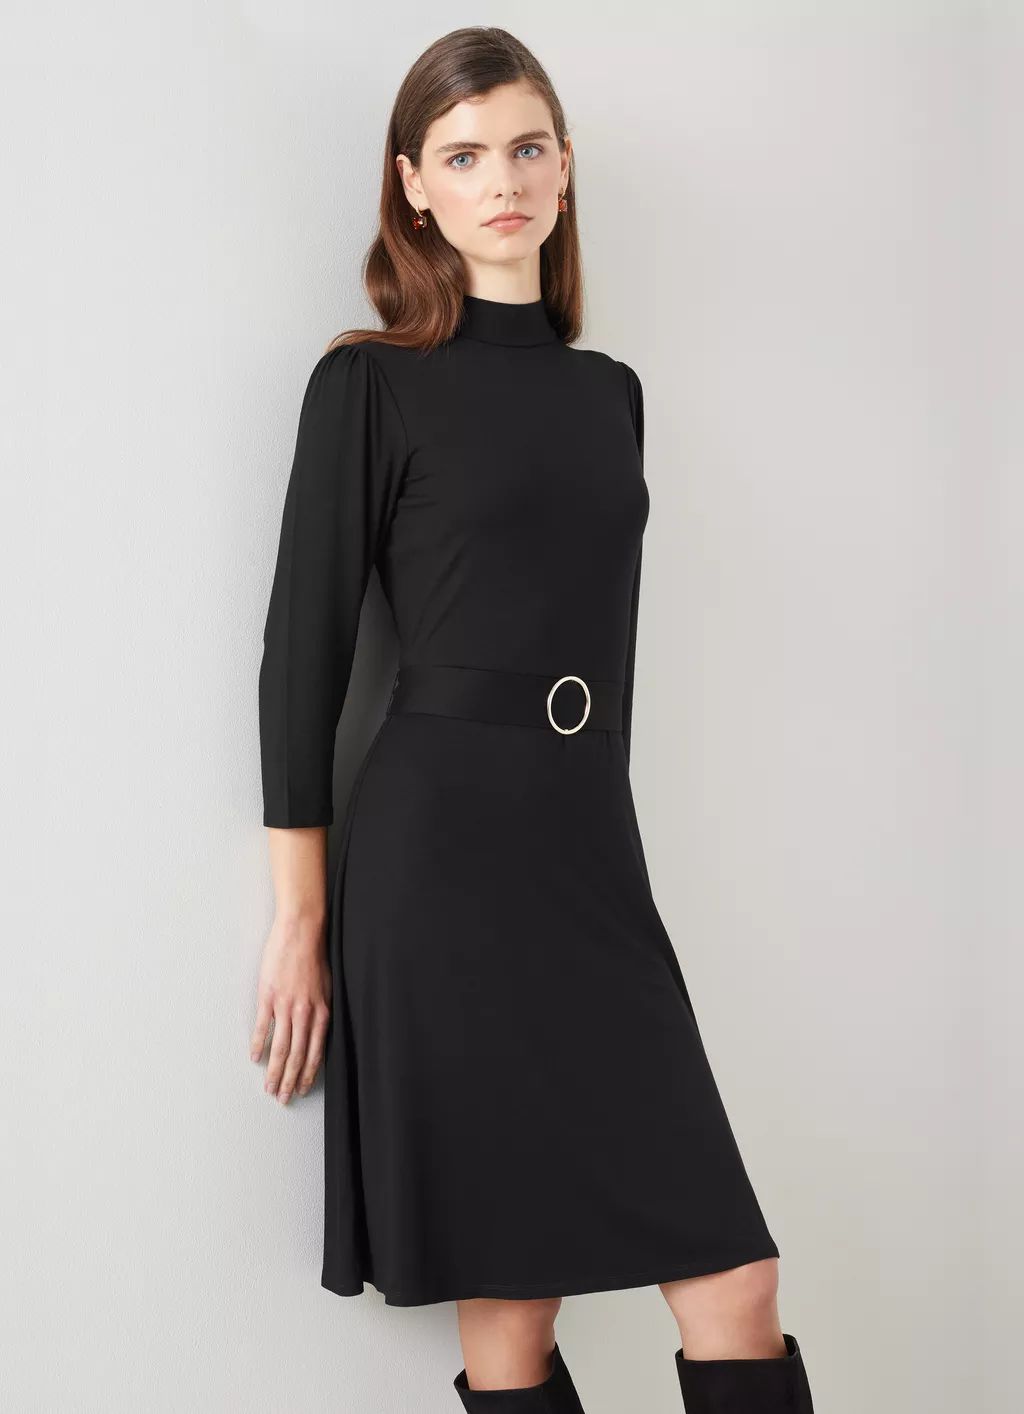 Florrie Black Lenzing™ Ecovero™ Viscose Dress | L.K. Bennett (UK)